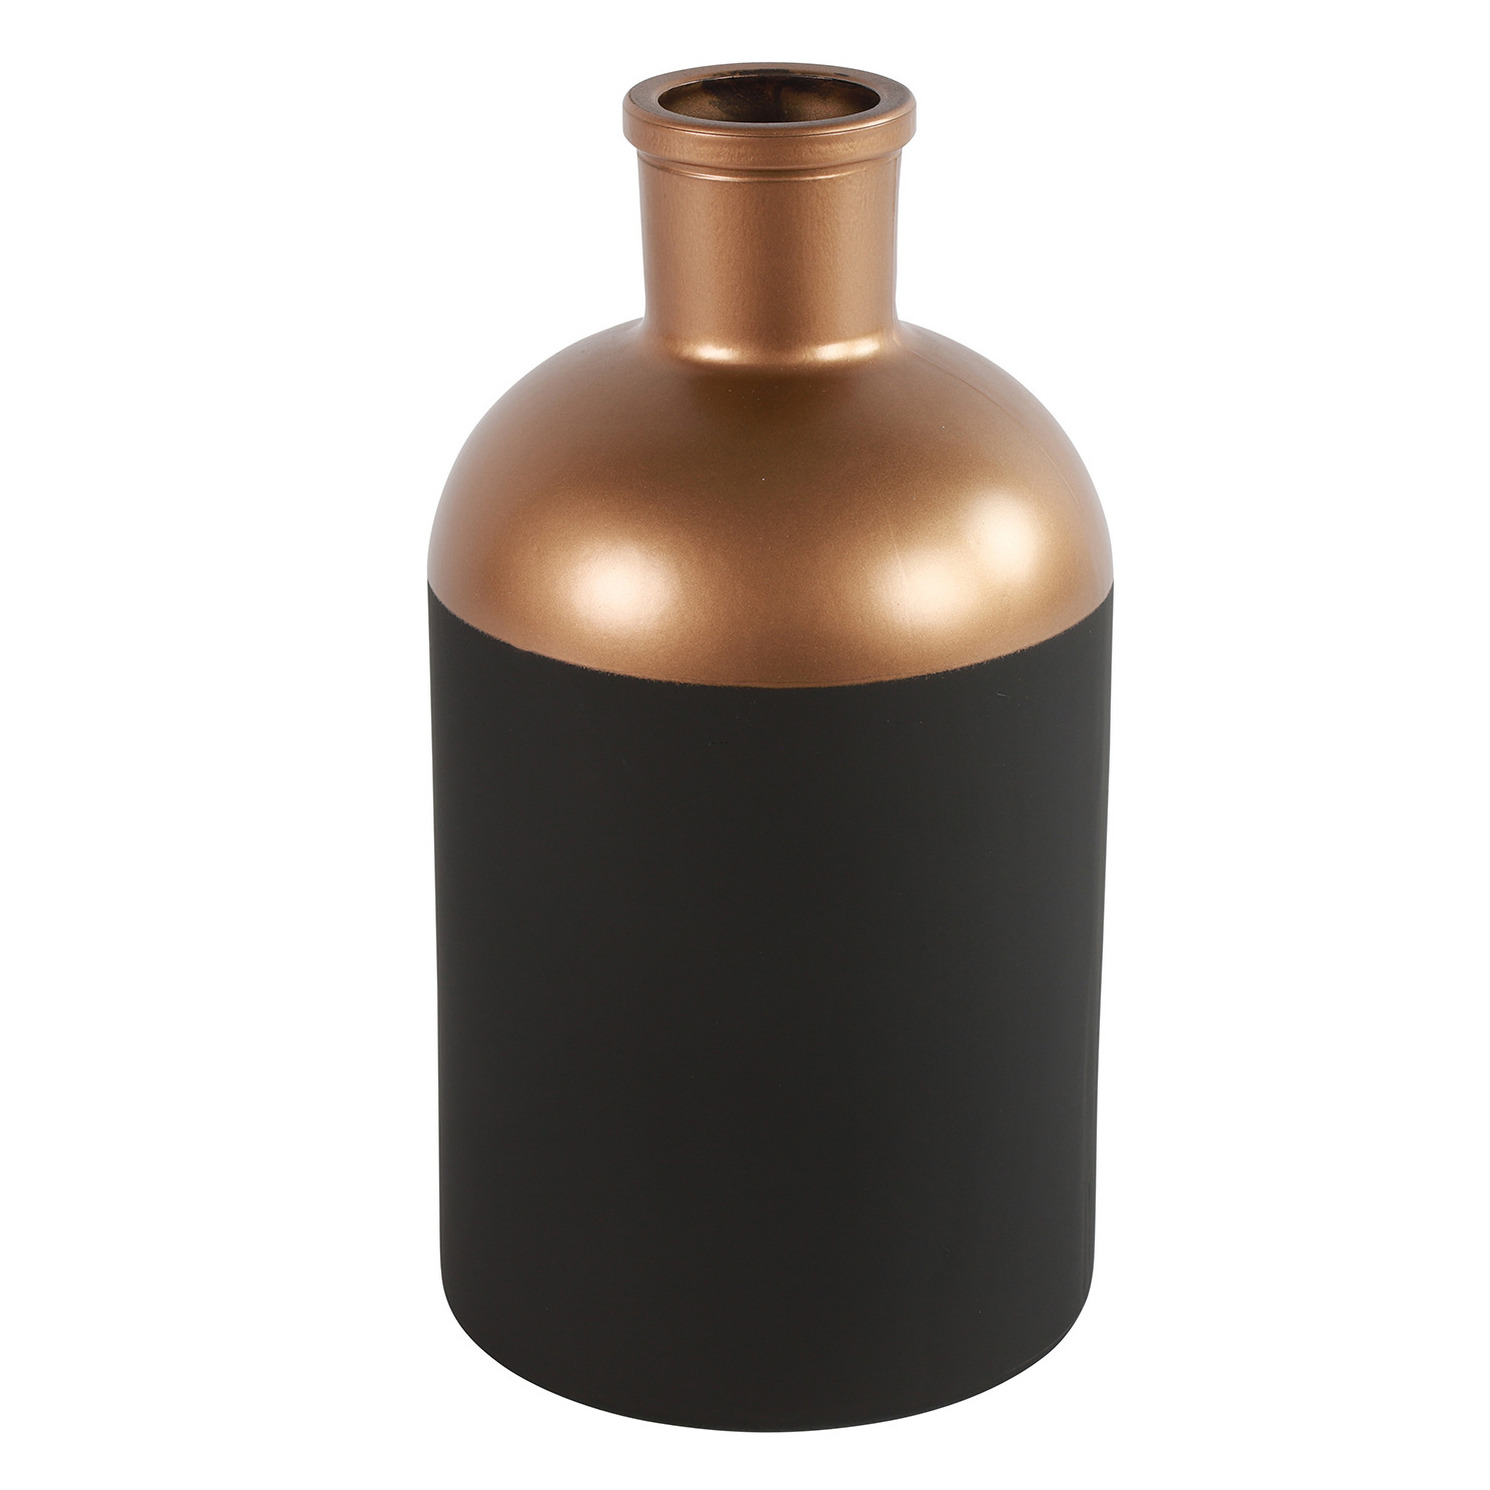 Countryfield Bloemen-deco vaas zwart-koper glas fles D14 x H26 cm